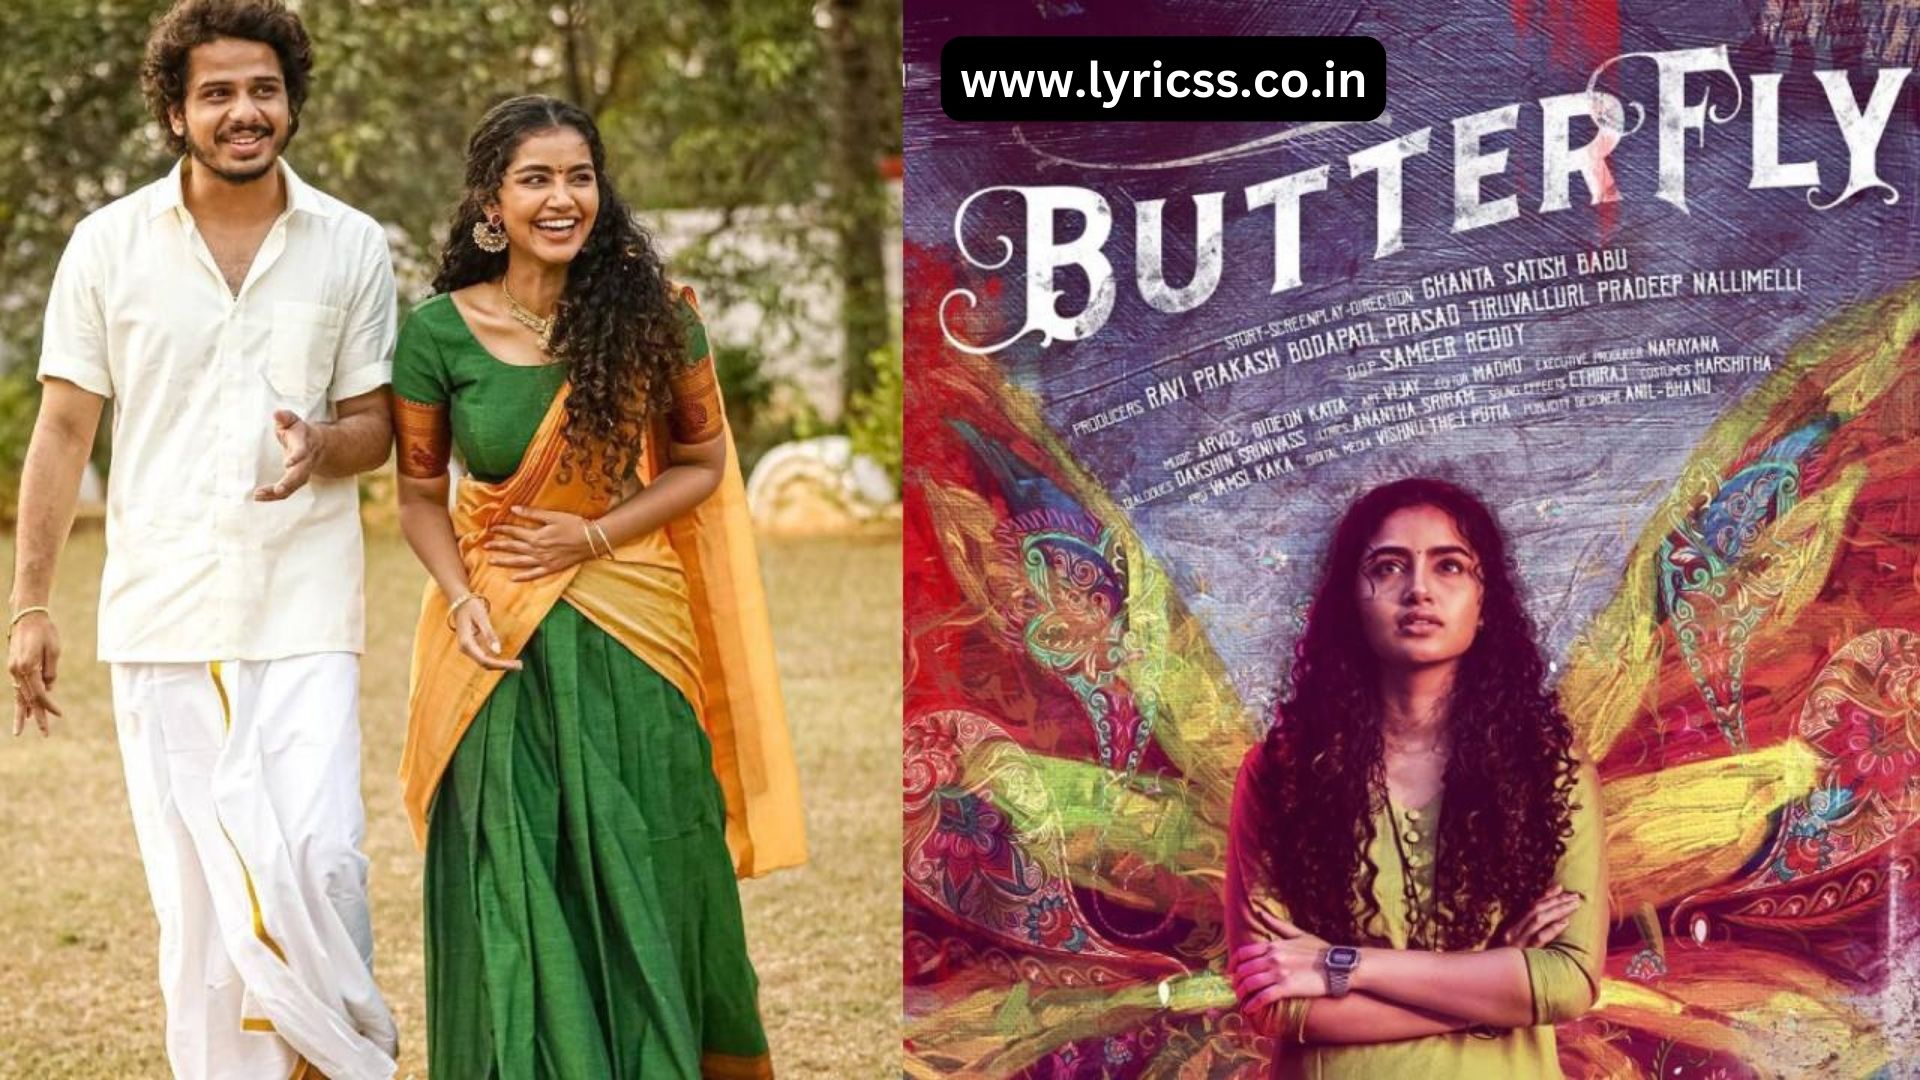 Butterfly Movie Cast |Butterfly Movie Download | Butterfly Full Movie in Hotstar | Disney Plus Hotstar Butterfly Movie | Butterfly Trailer Download | Butterfly Telugu Movie Download | Anupama Butterfly Movie